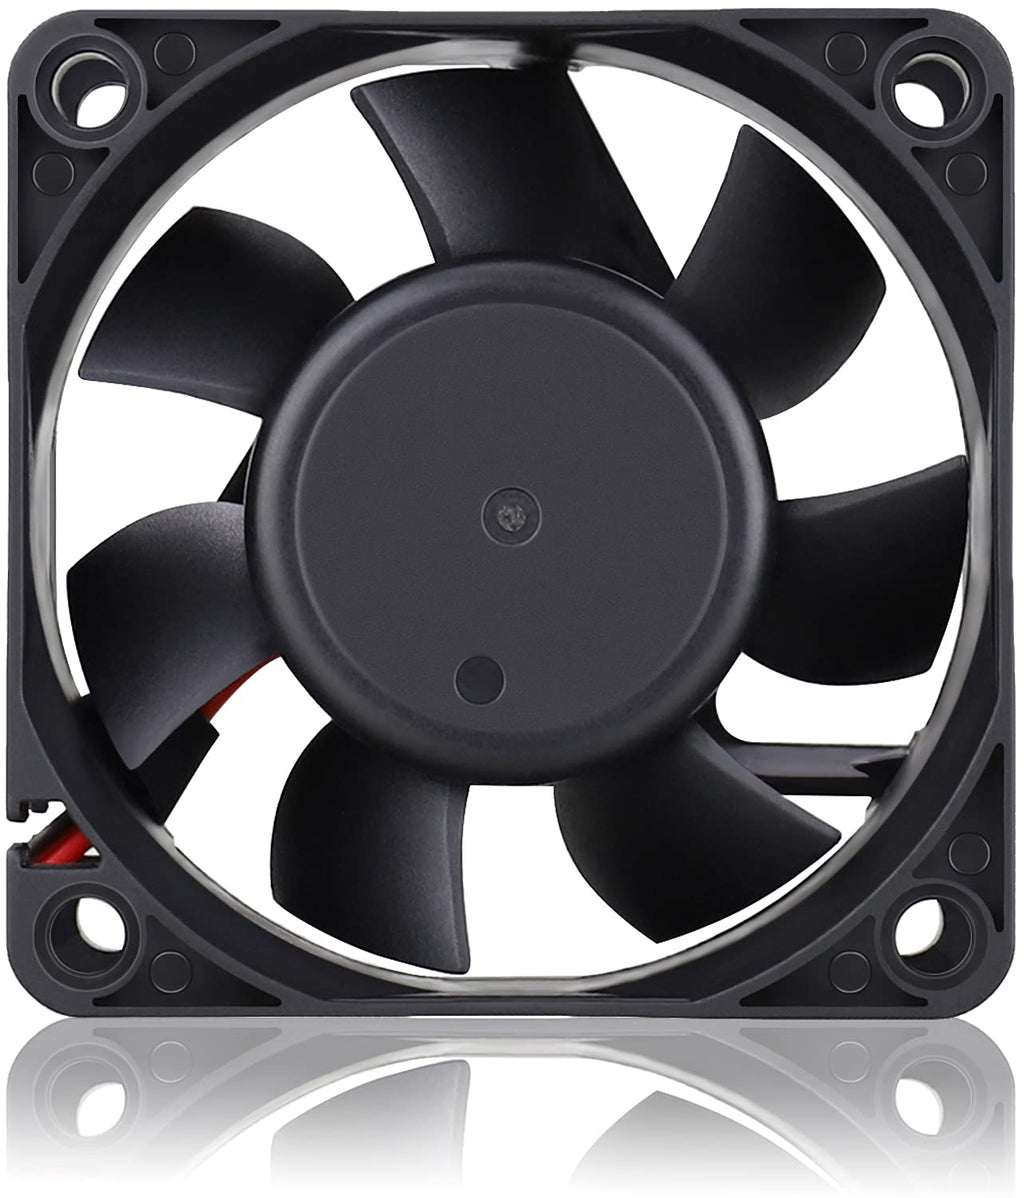  [AUSTRALIA] - GDSTIME 60mm x 60mm x 25mm 6cm 2 Wire Dc 24v Brushless Cooling Fan